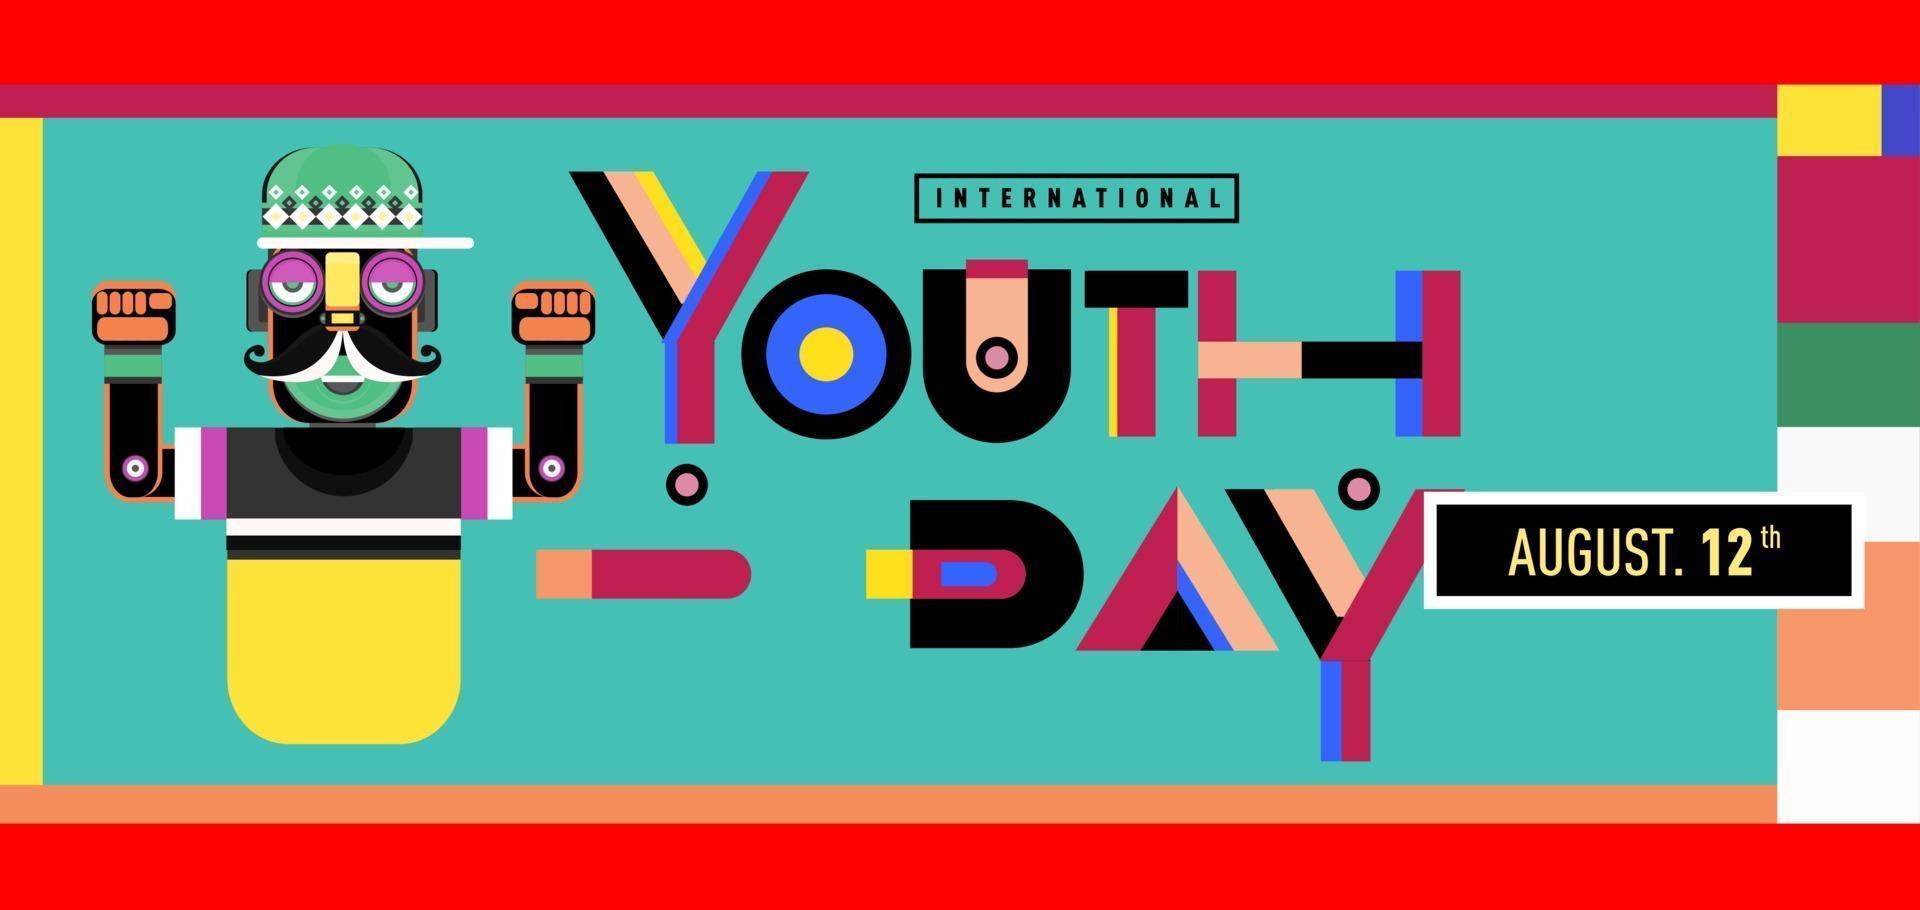 ilustración vectorial banner del día de la juventud vector